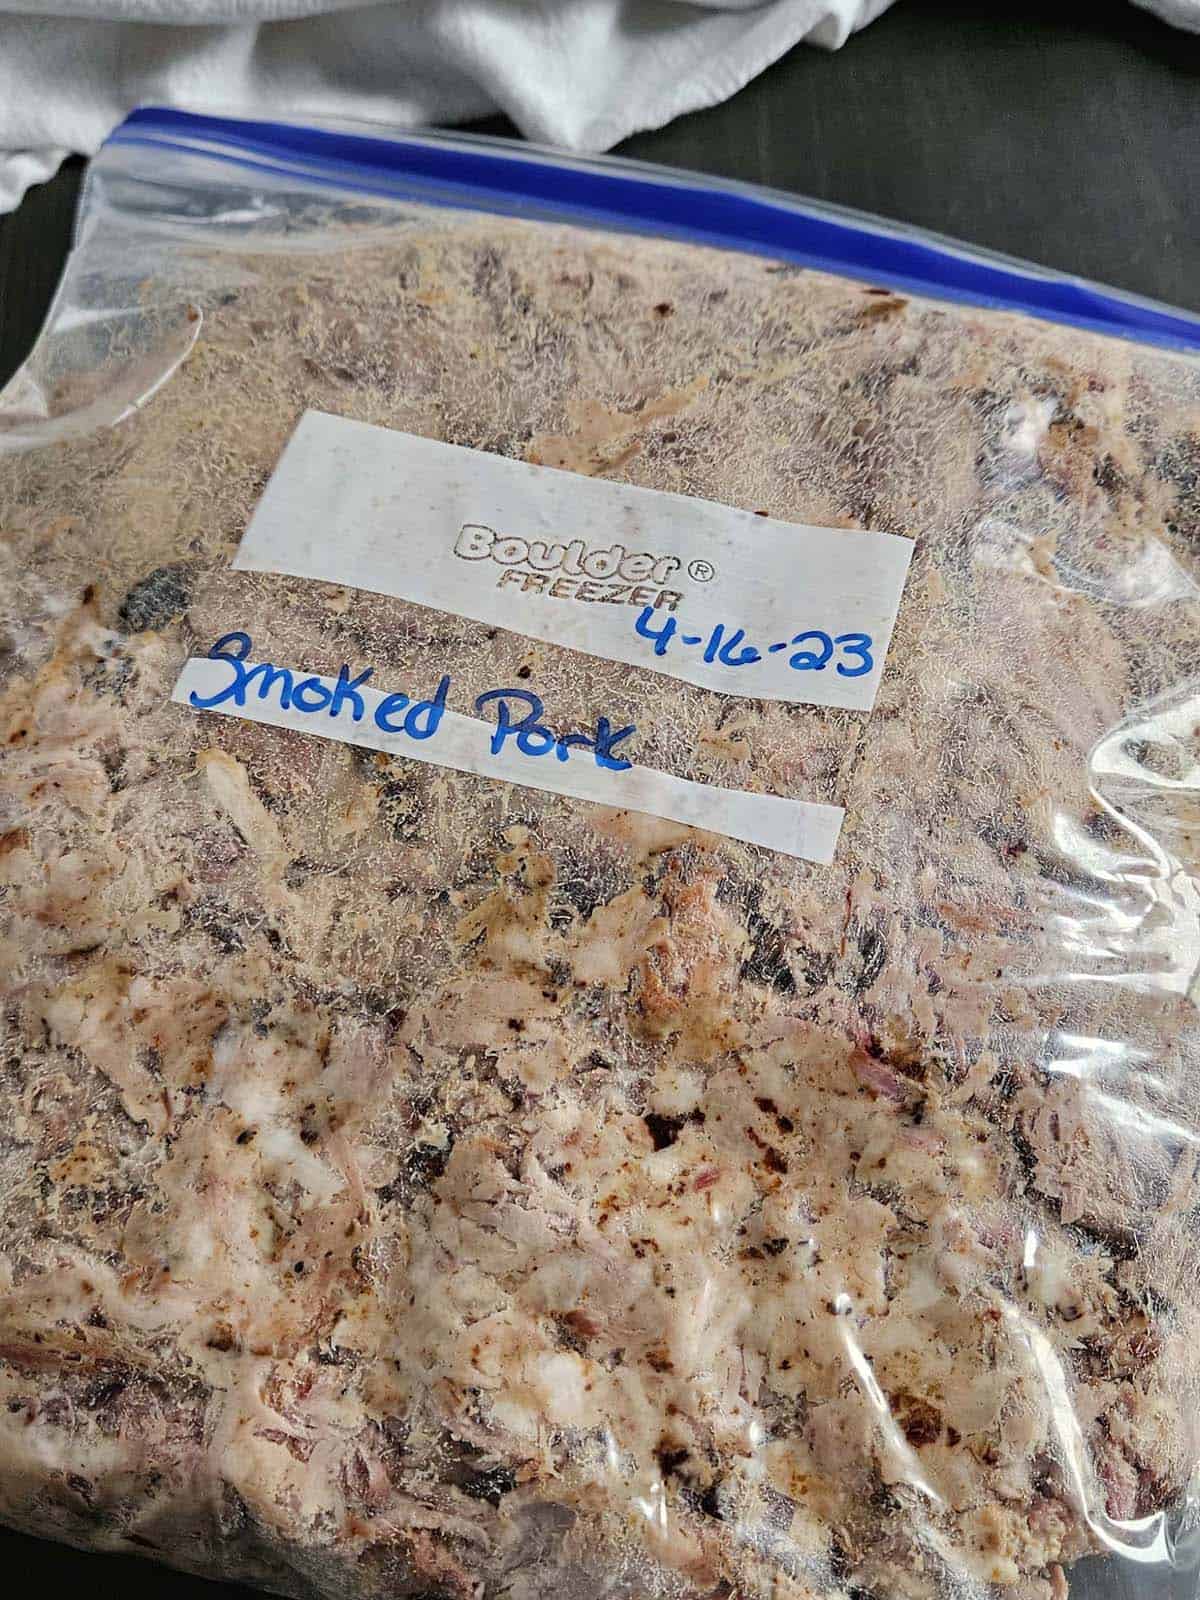 Shredded pork in a ziplock bag.